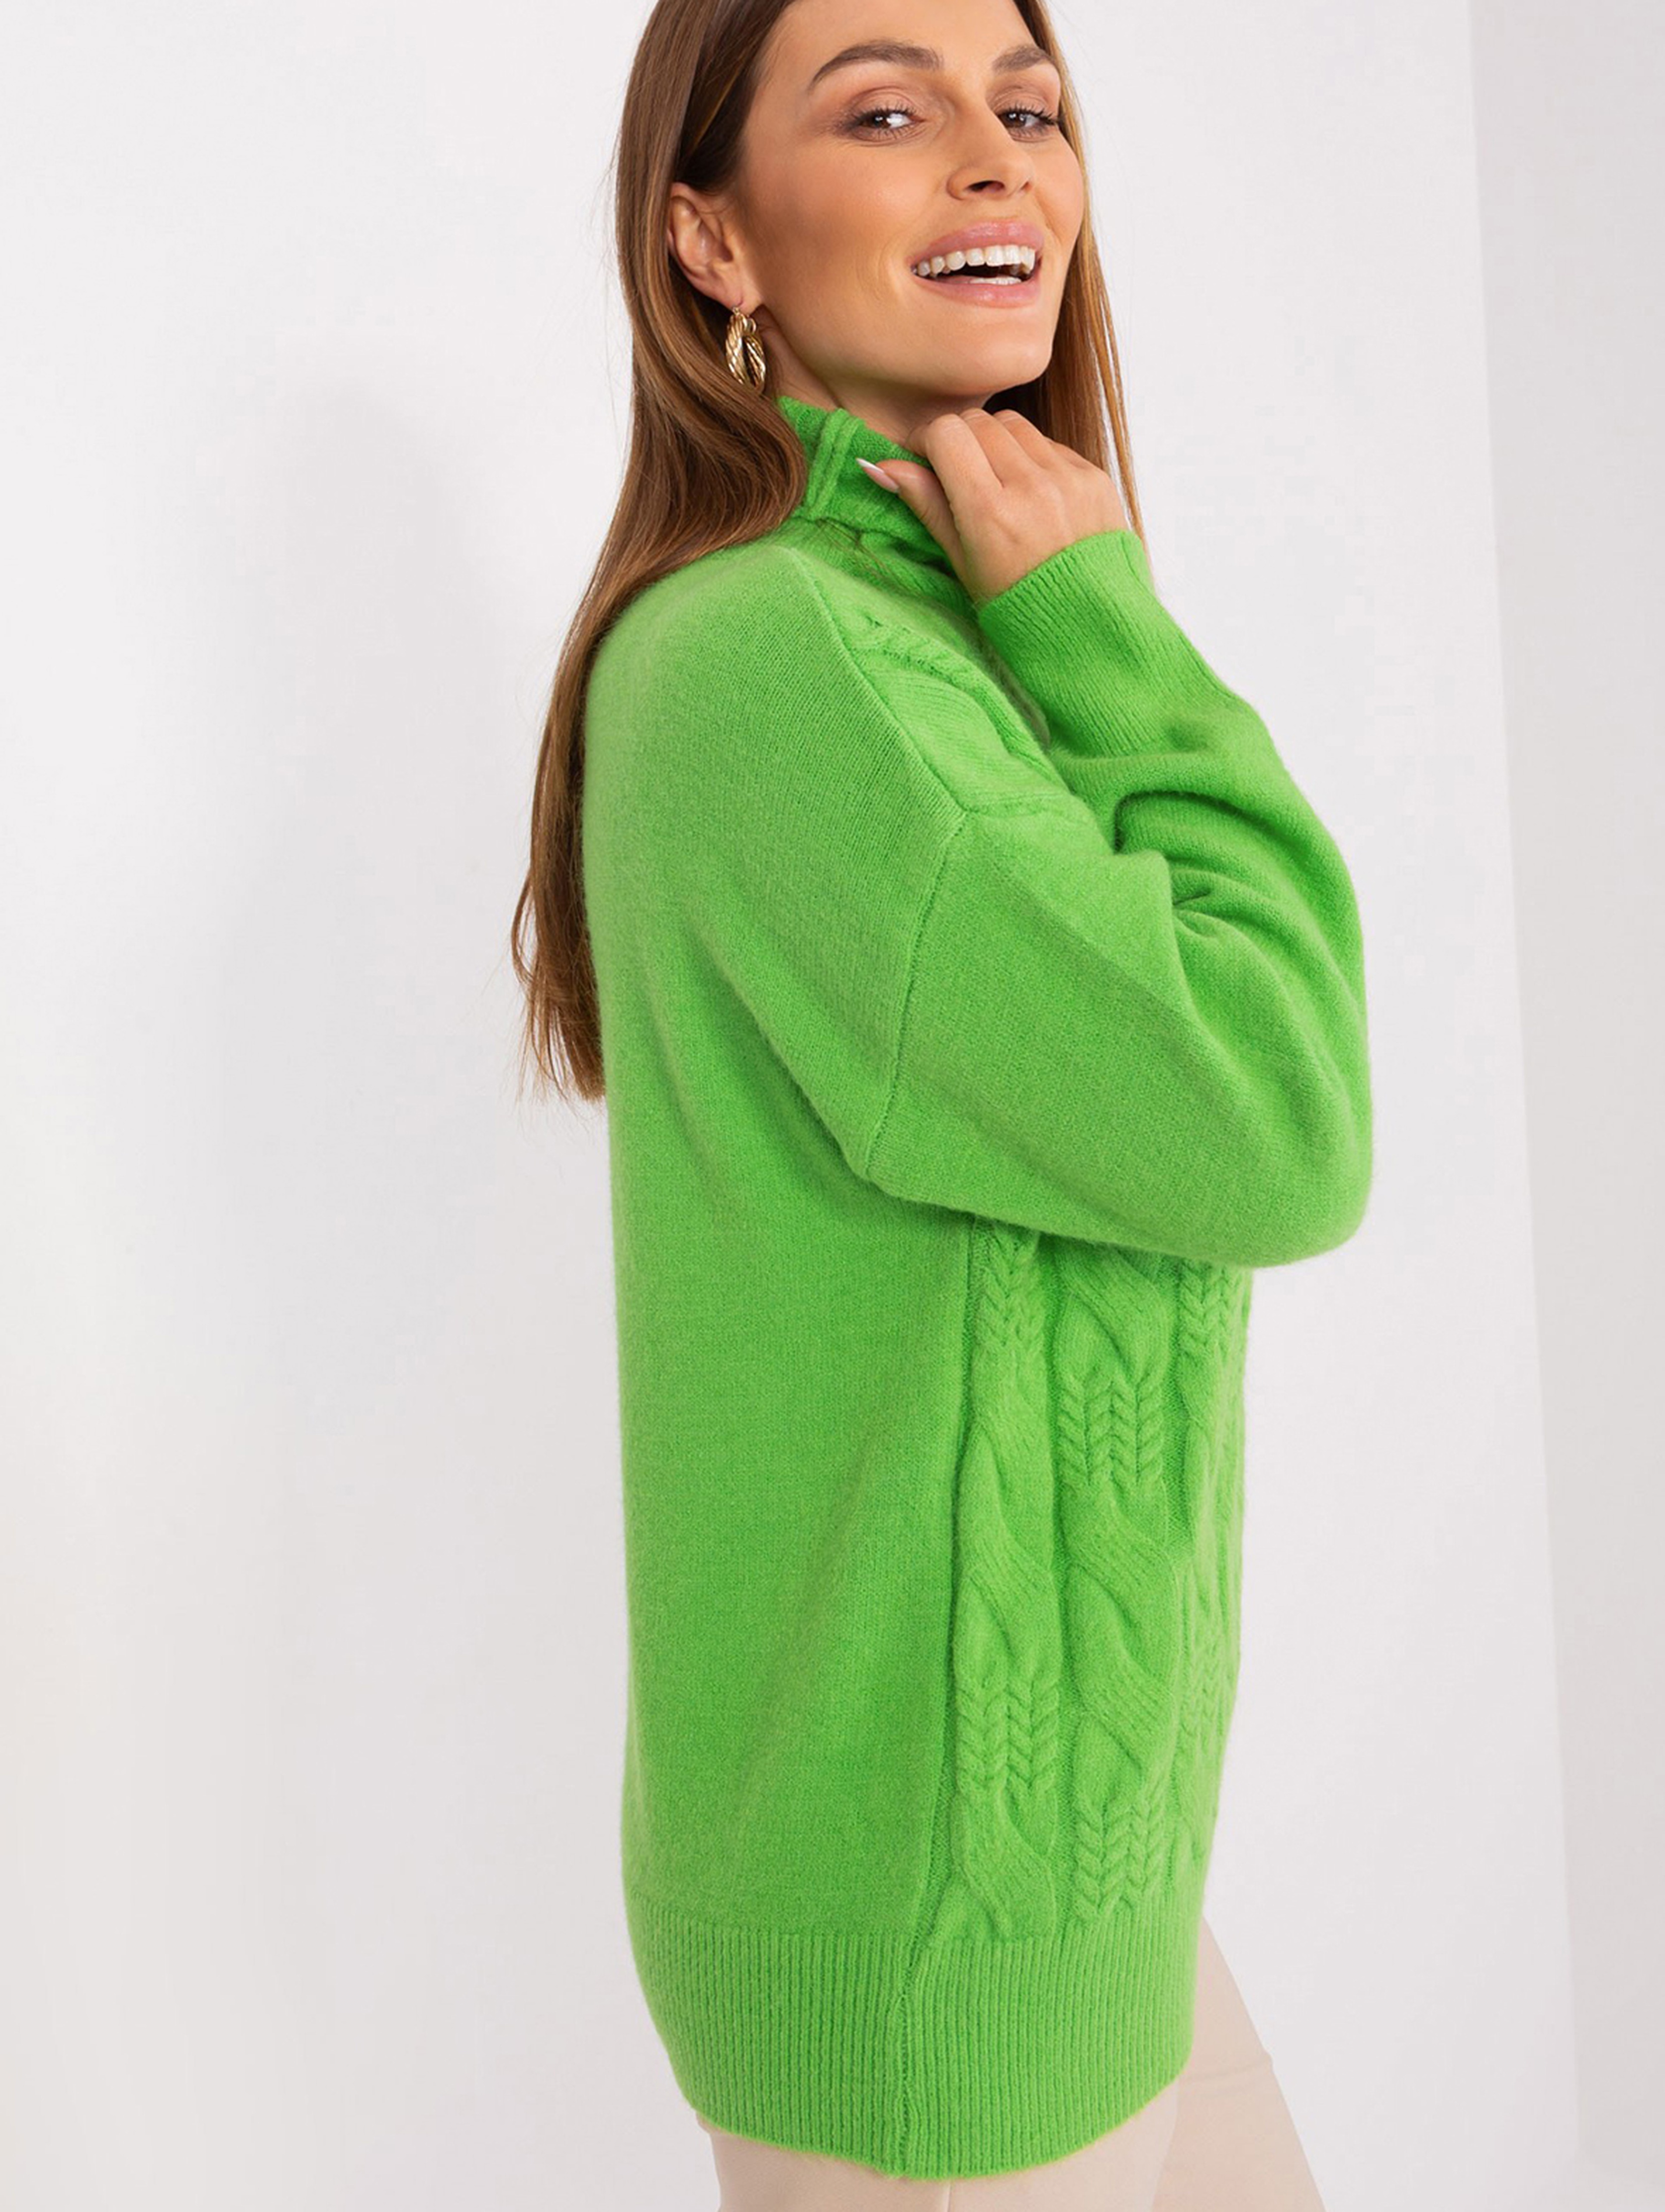 Damski sweter z golfem jasny zielony